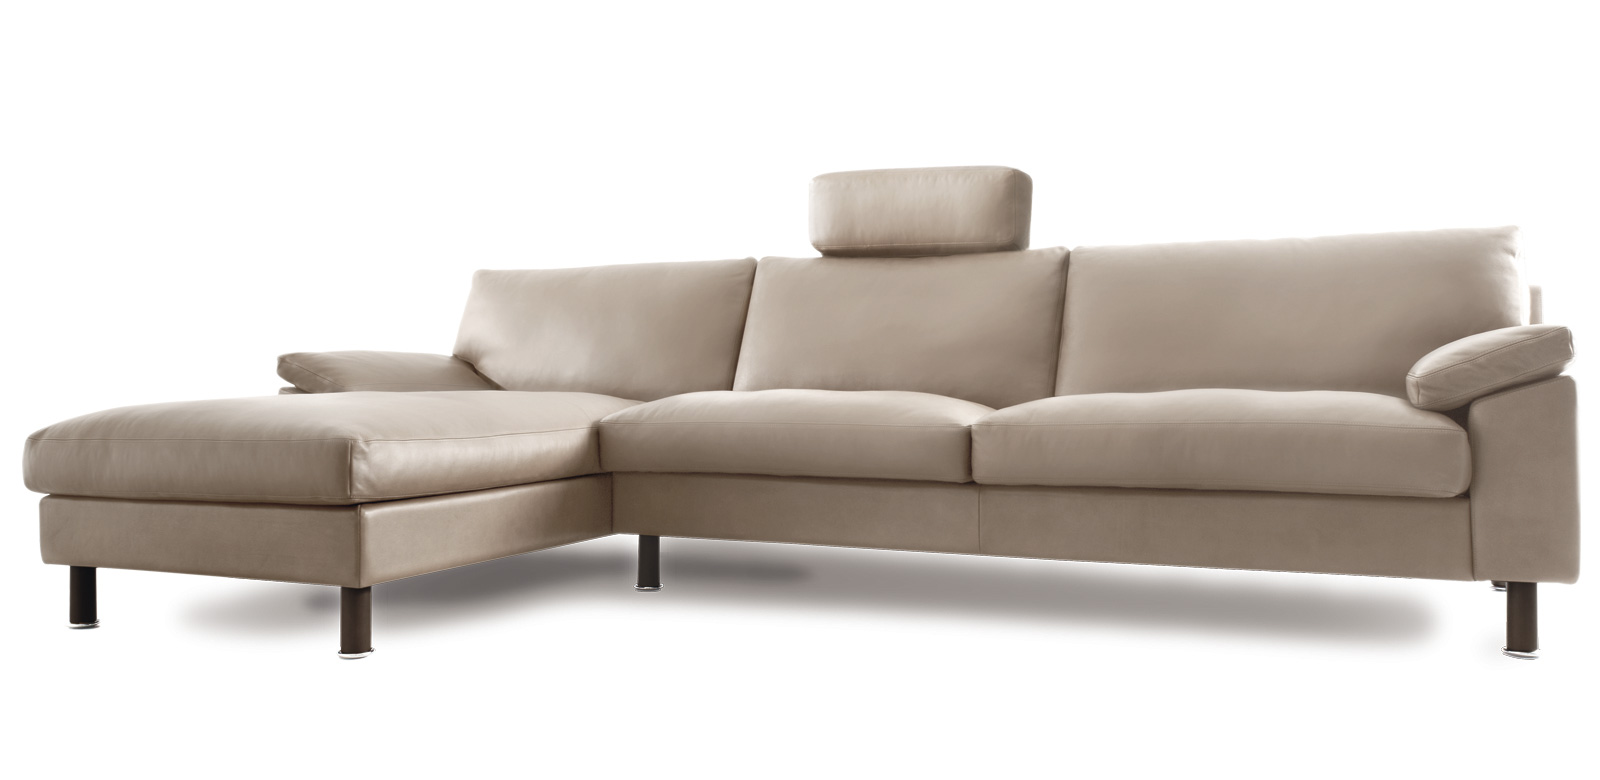 CL650 Longchair-Sofa aus beige-weißem Leder mit Kopfstütze mittig